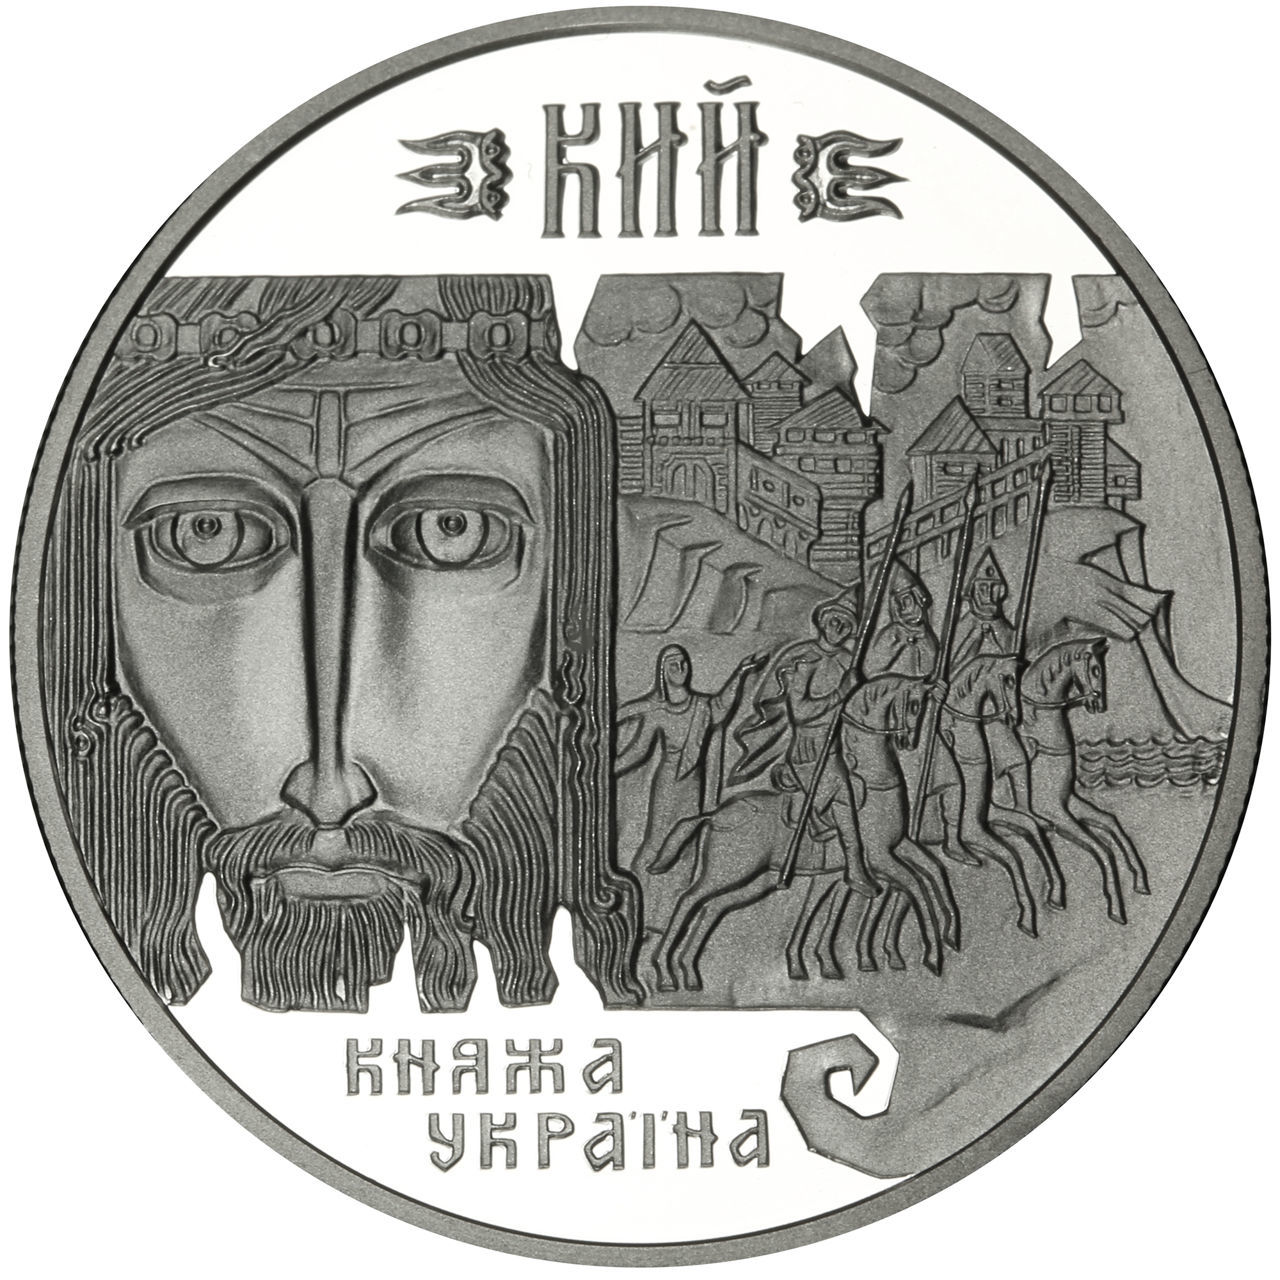 Украина 1998 год. Серебро 10 гривен. Монета Киев. Князь на гривне.